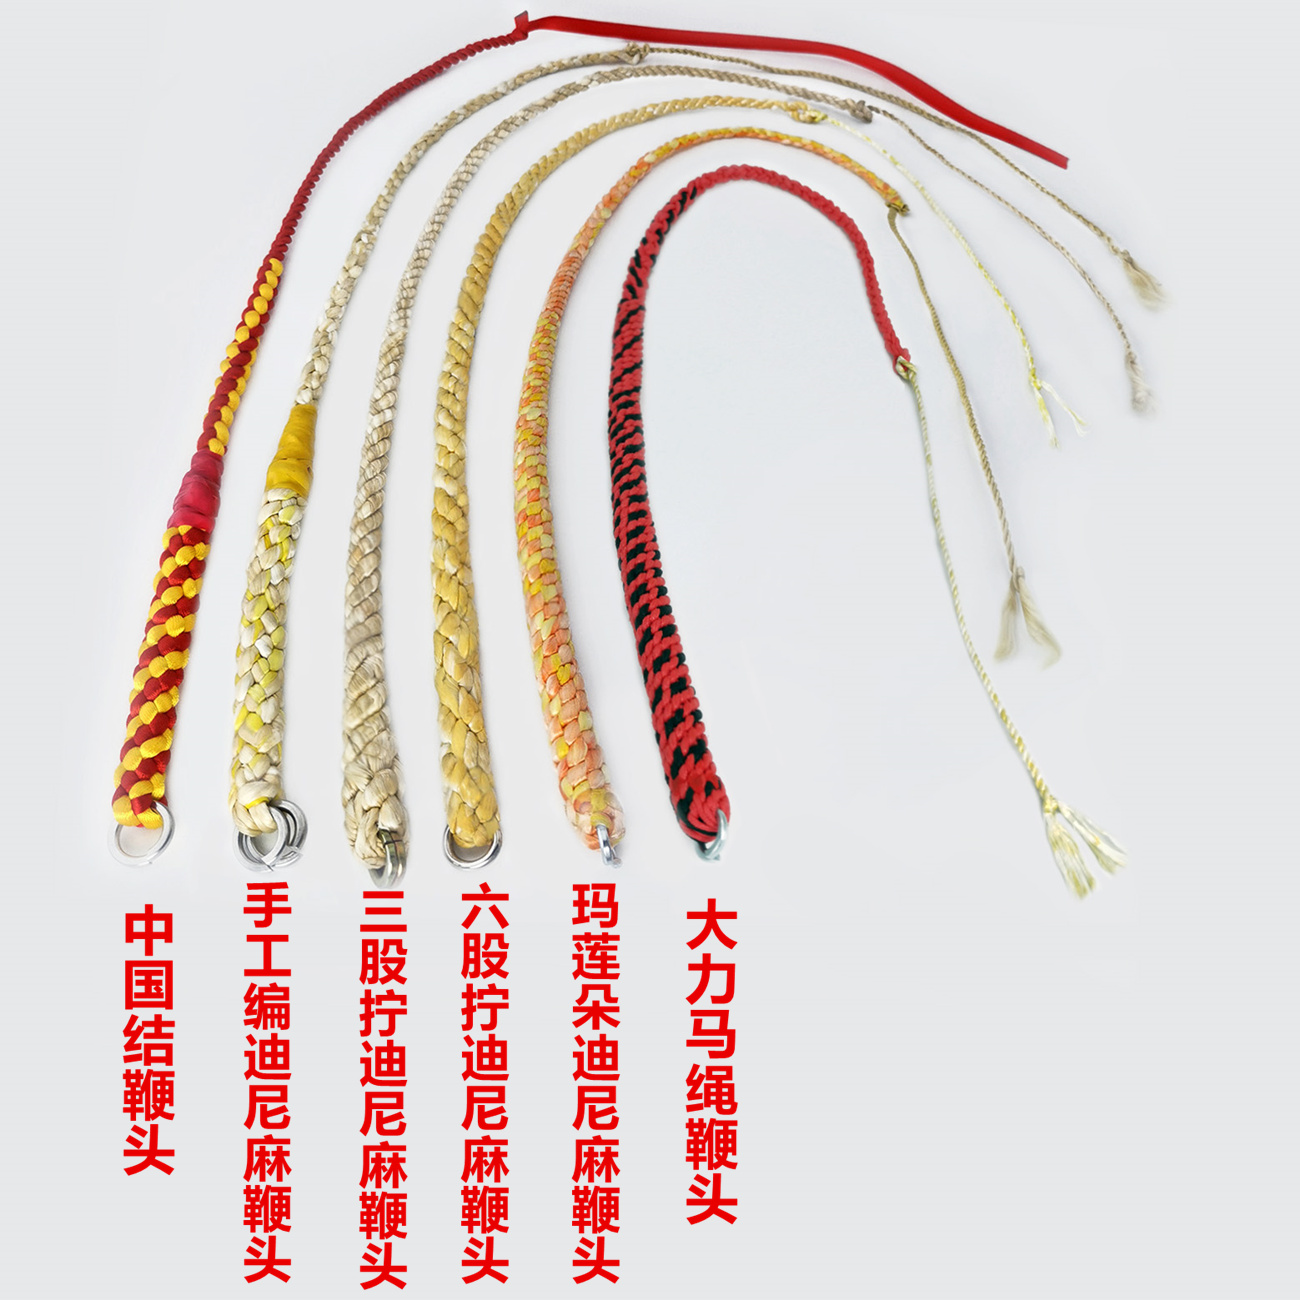 麒麟鞭鞭头制作方法图片